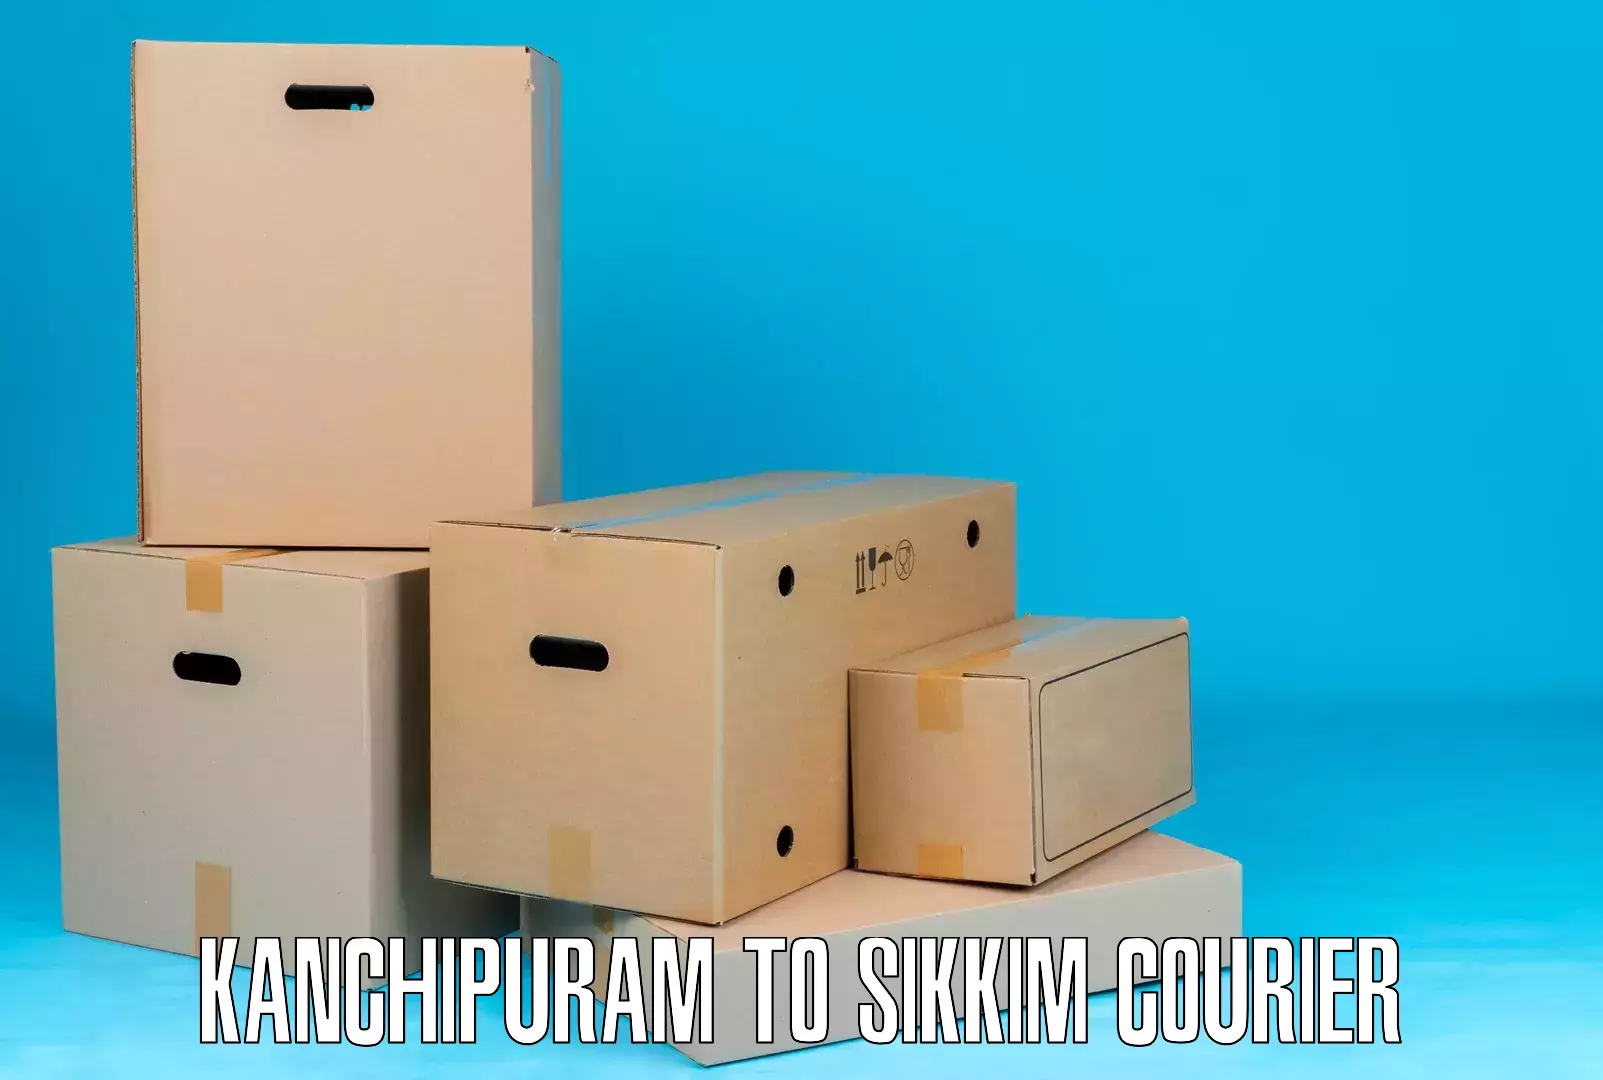 Efficient freight service Kanchipuram to North Sikkim